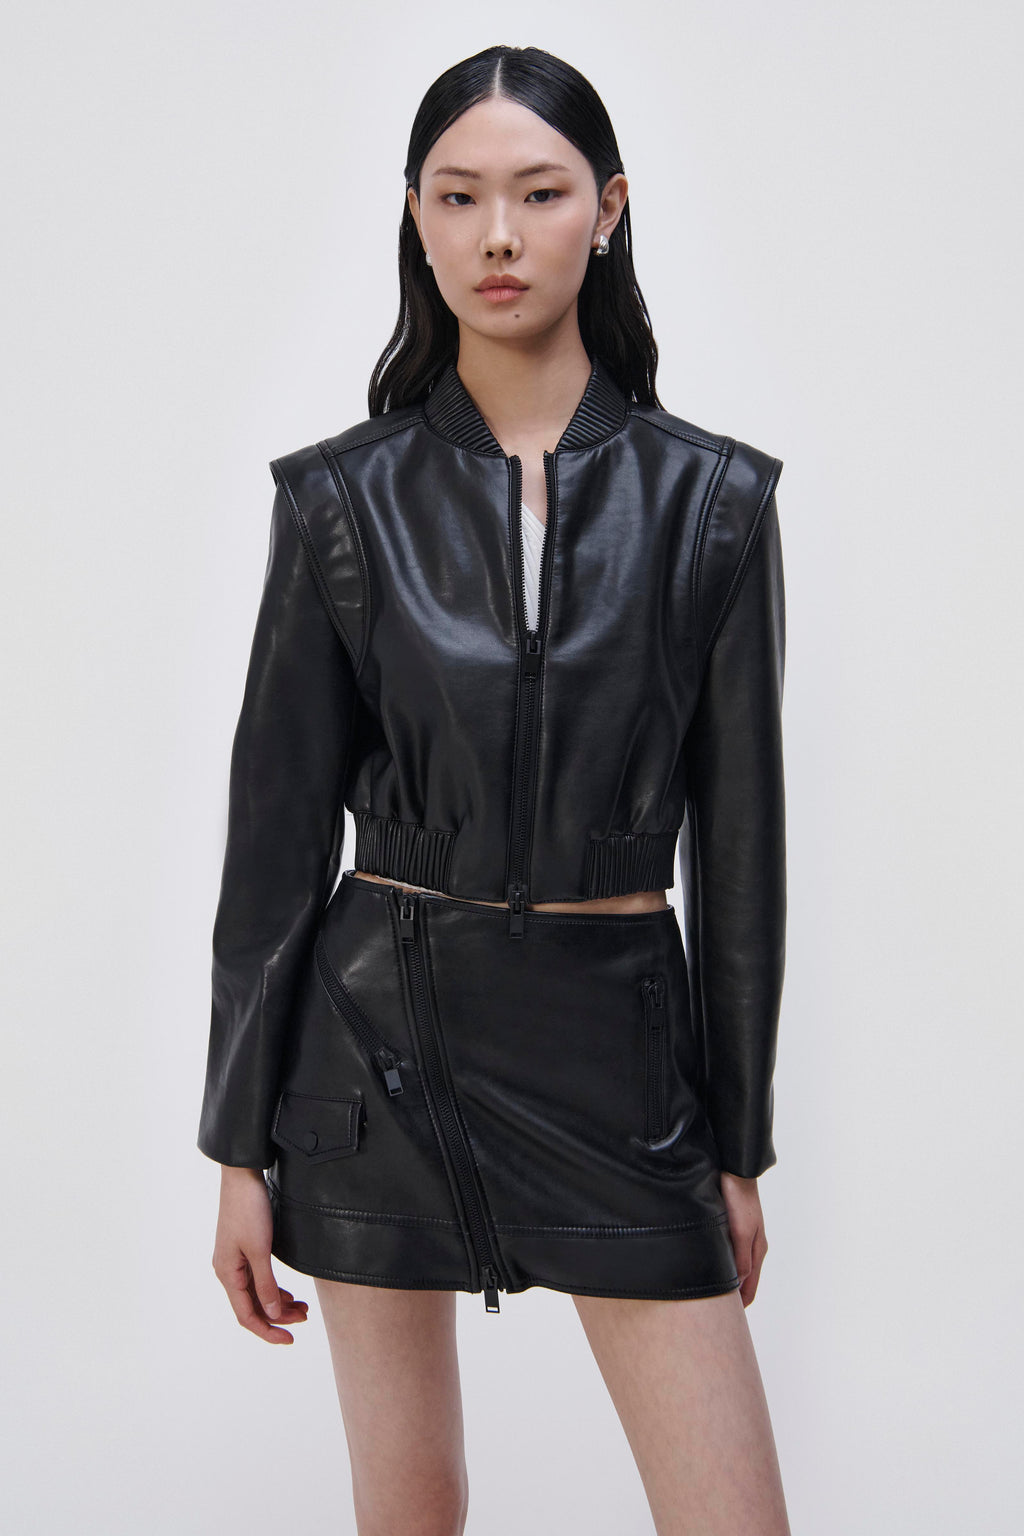 Women's Faux Leather Jacket Zara Inspired –